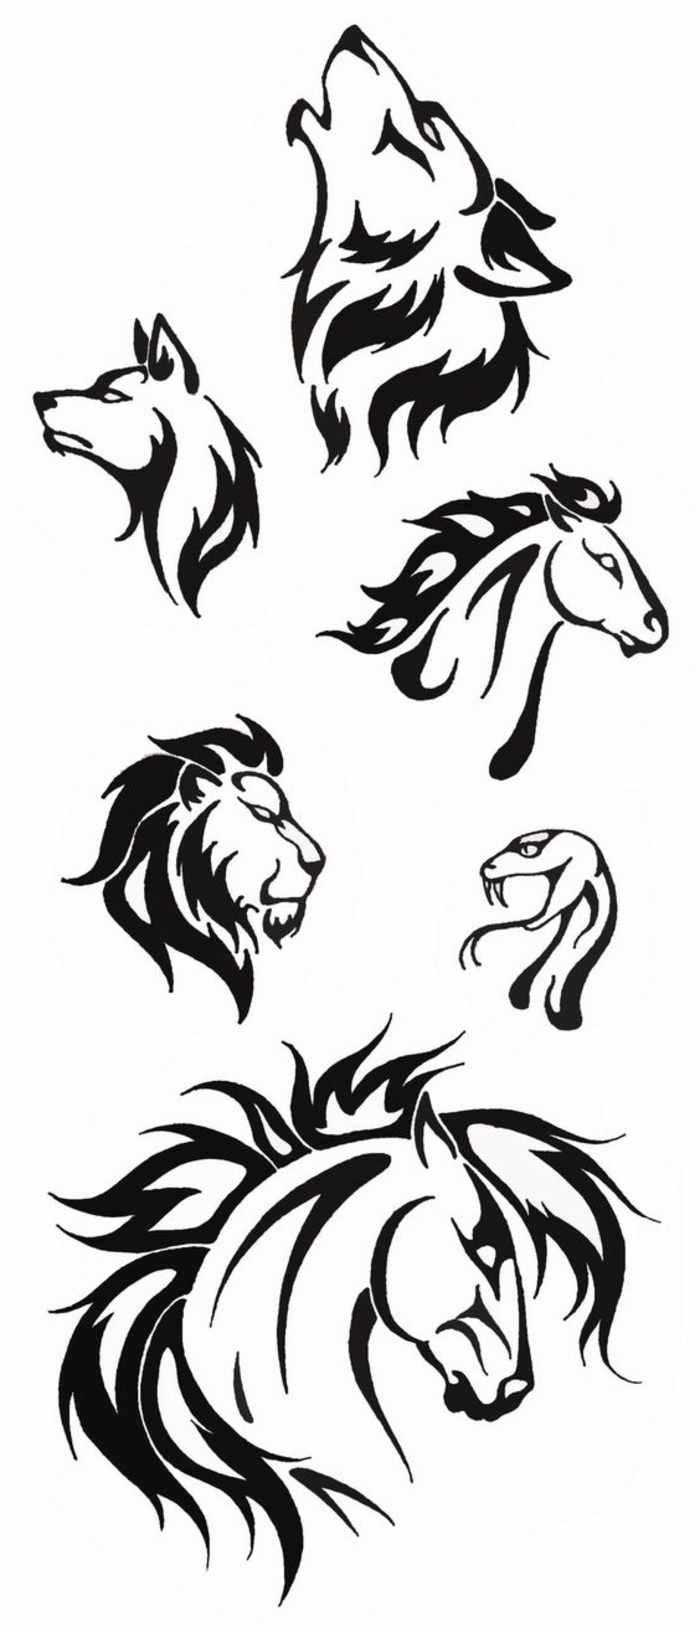 hier zeigen wir ihnen verschiedene ideen für schwarze tattoos - wölfe, löwe, zwei pferde, und eine schlange 